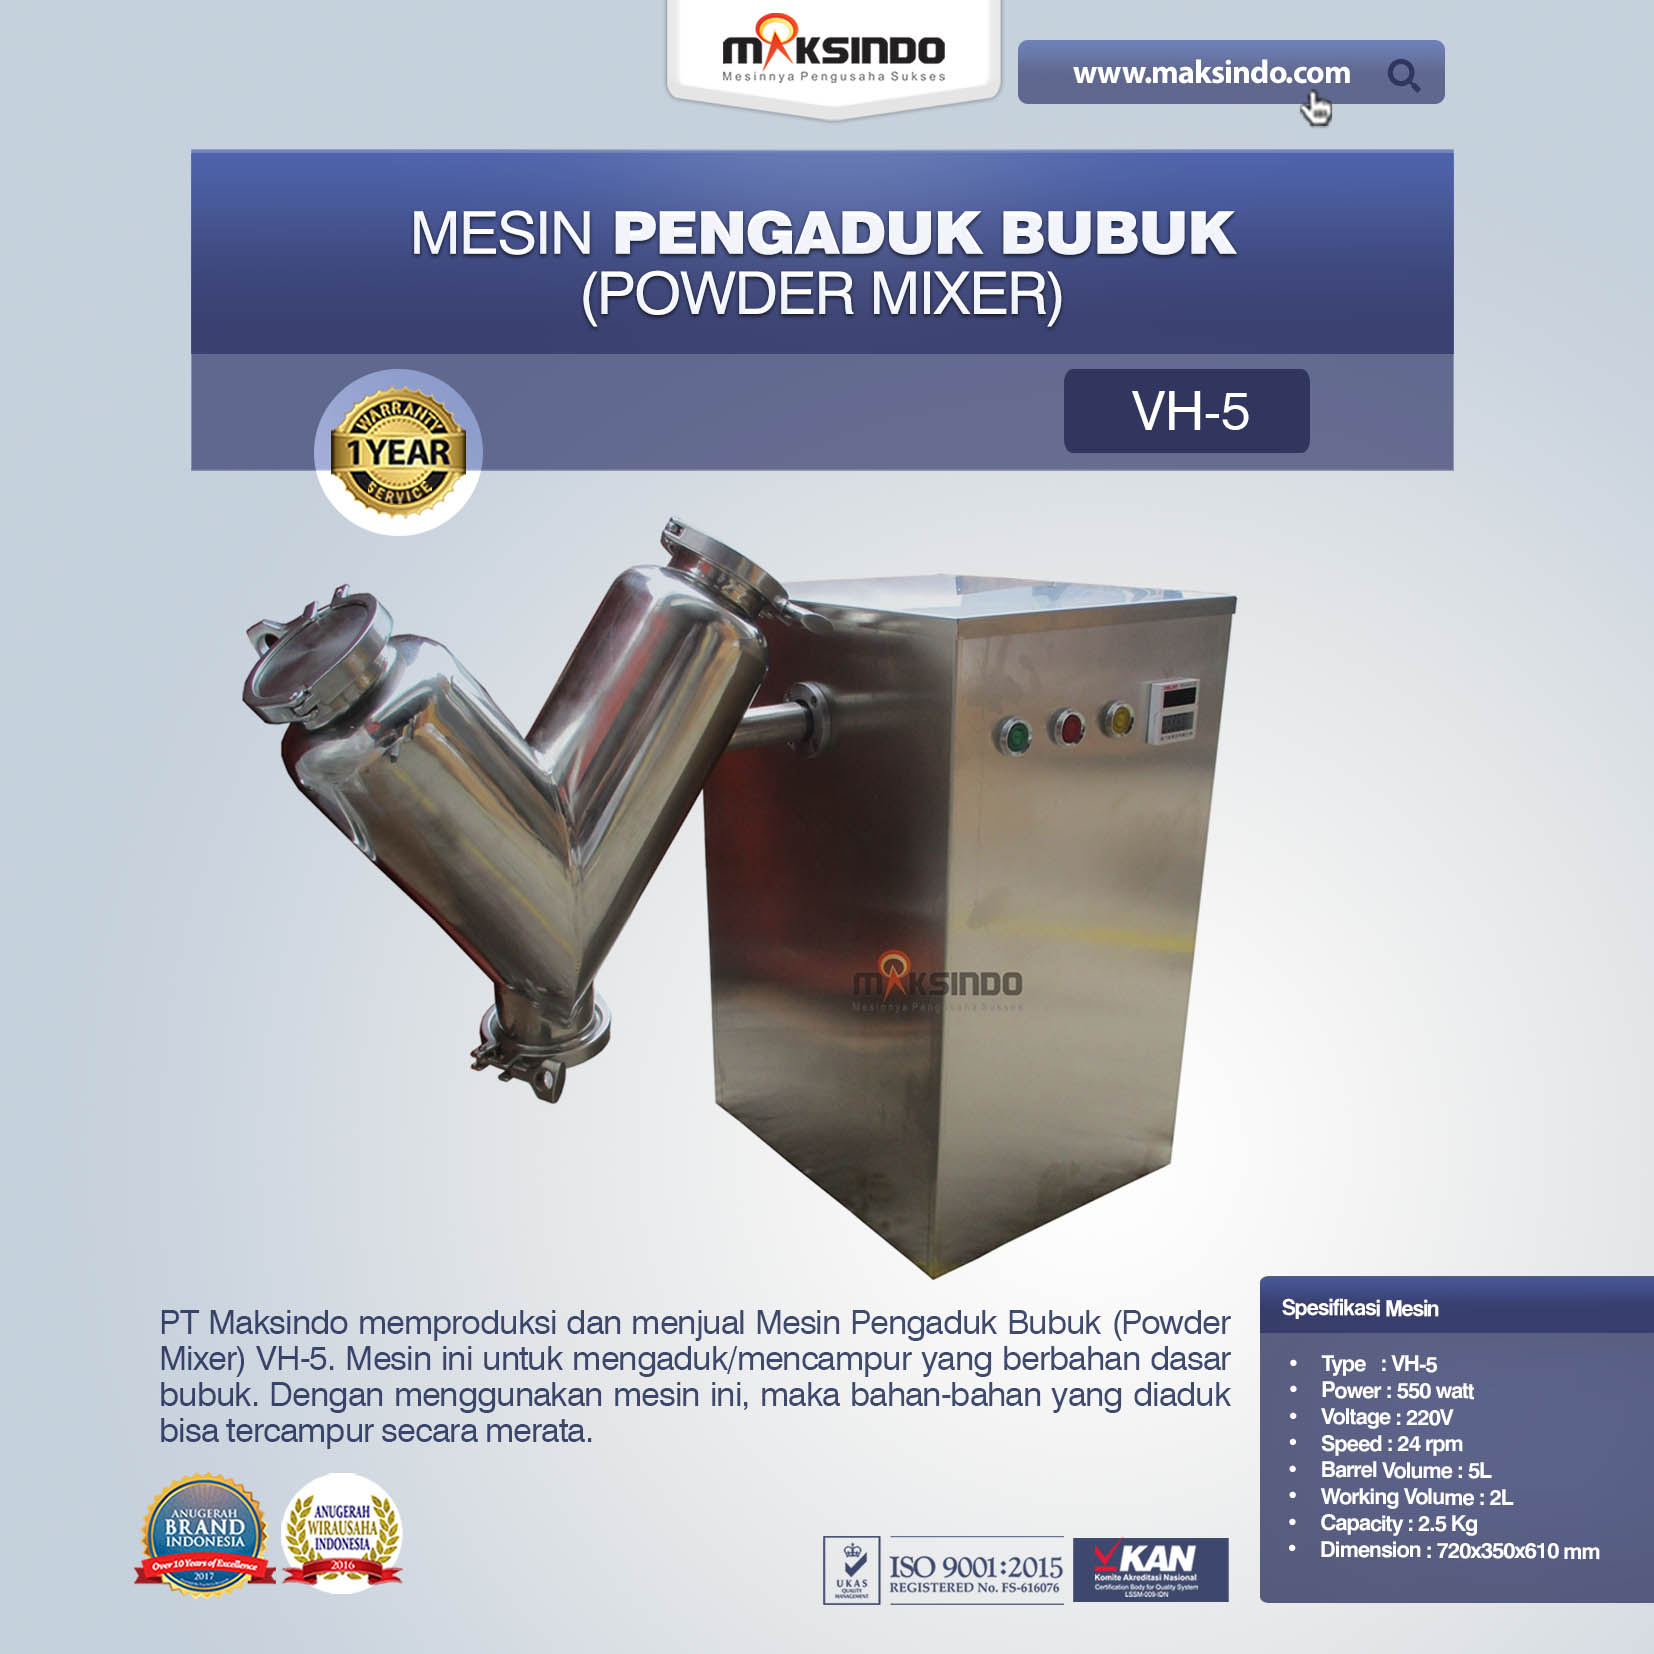 Jual Mesin Pengaduk Bubuk (Powder Mixer) VH-5 di Jakarta